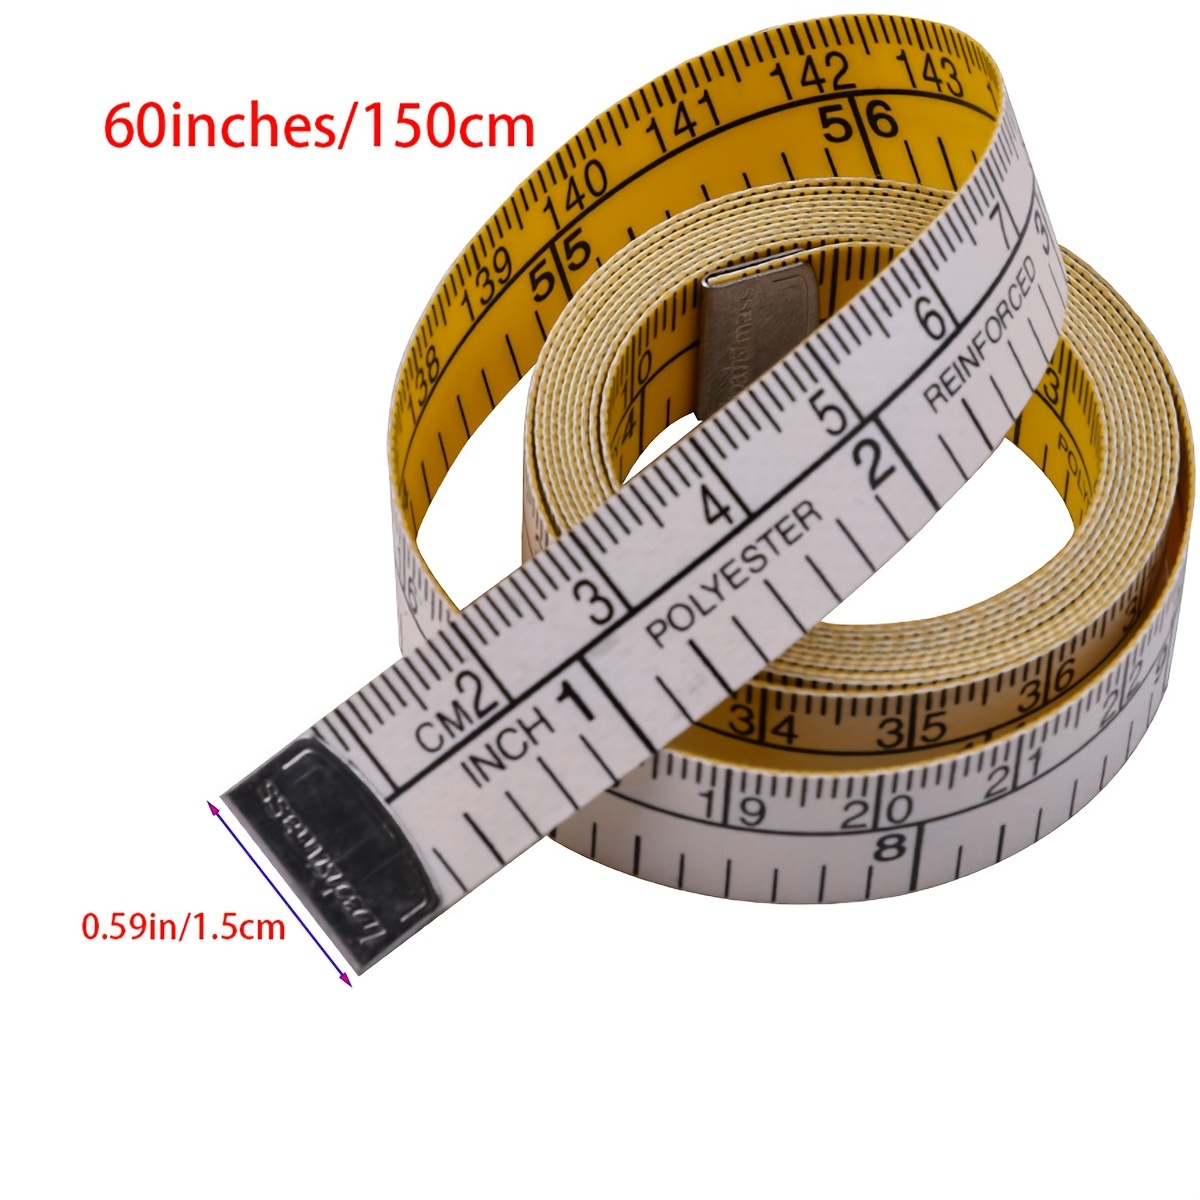  Cinta métrica corporal de 60 pulgadas (150 cm